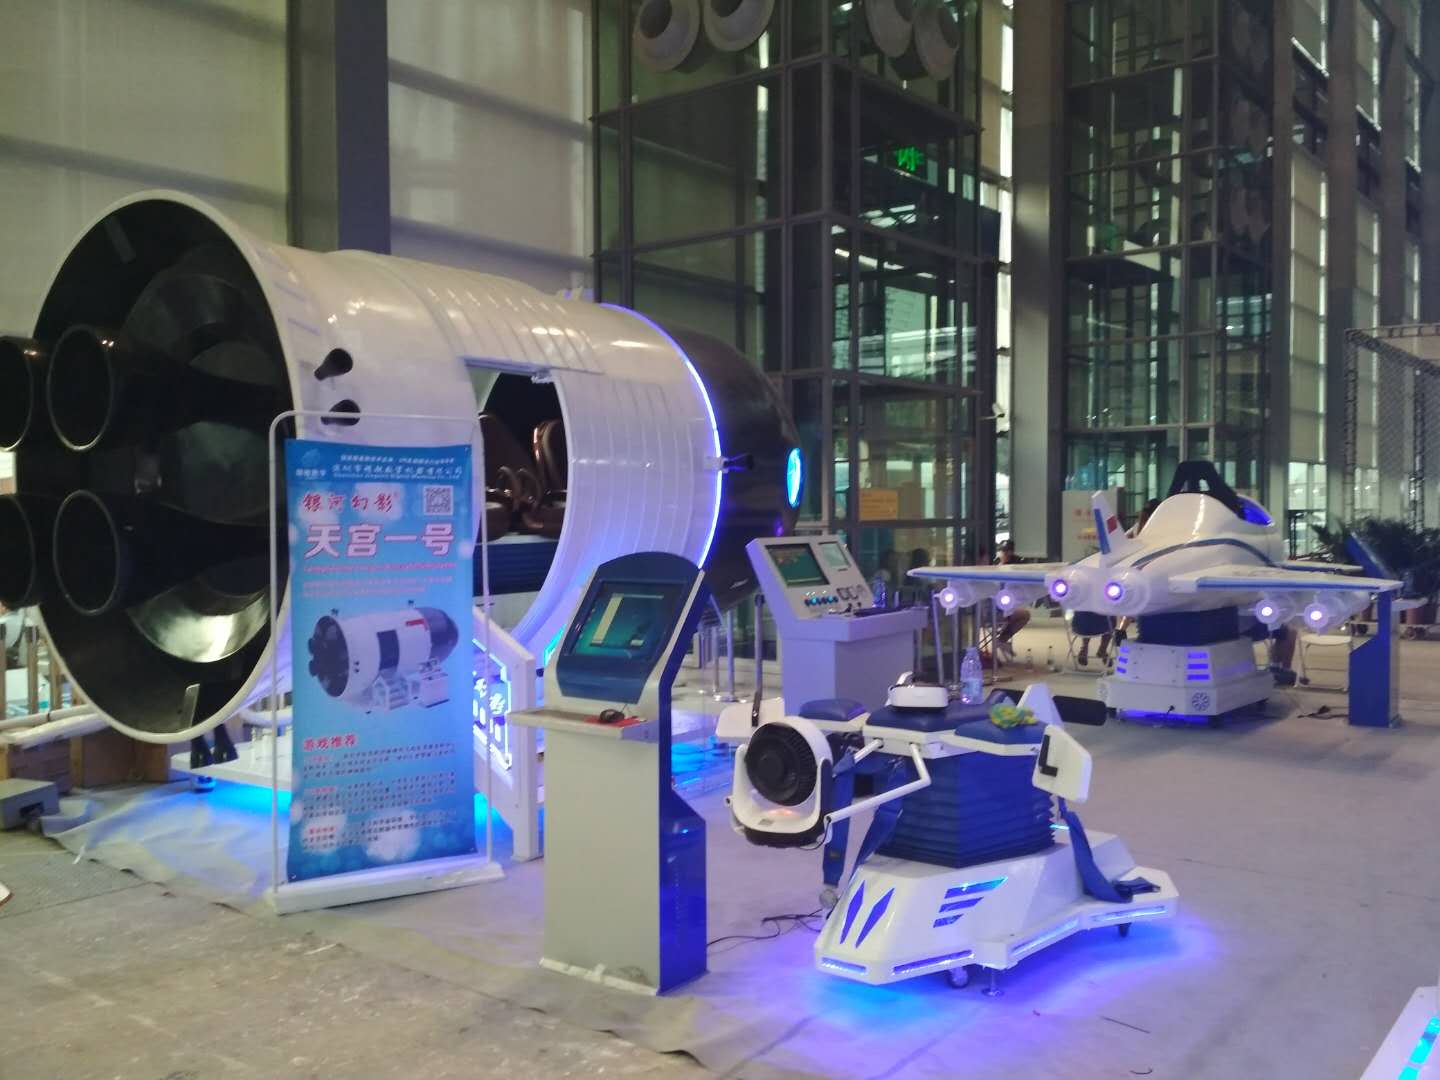 VR航空嘉年华 VR设备租赁神器 吸引人气神器